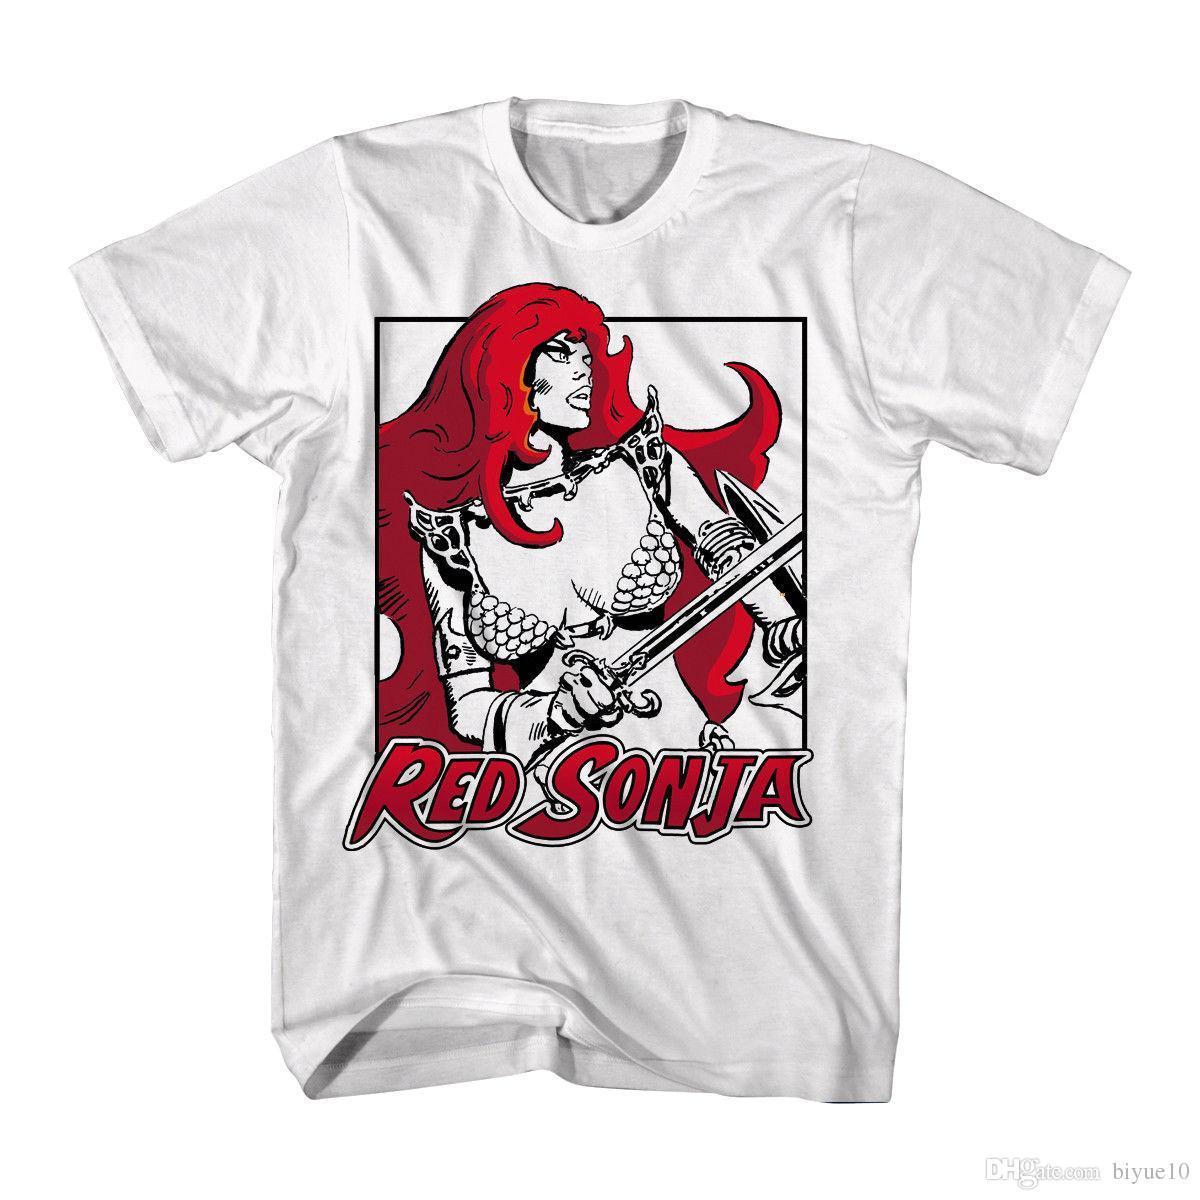 Red Flowing Hair Logo - Red Sonja Movie Black & White With Red Sonja'S Red Flowing Hair